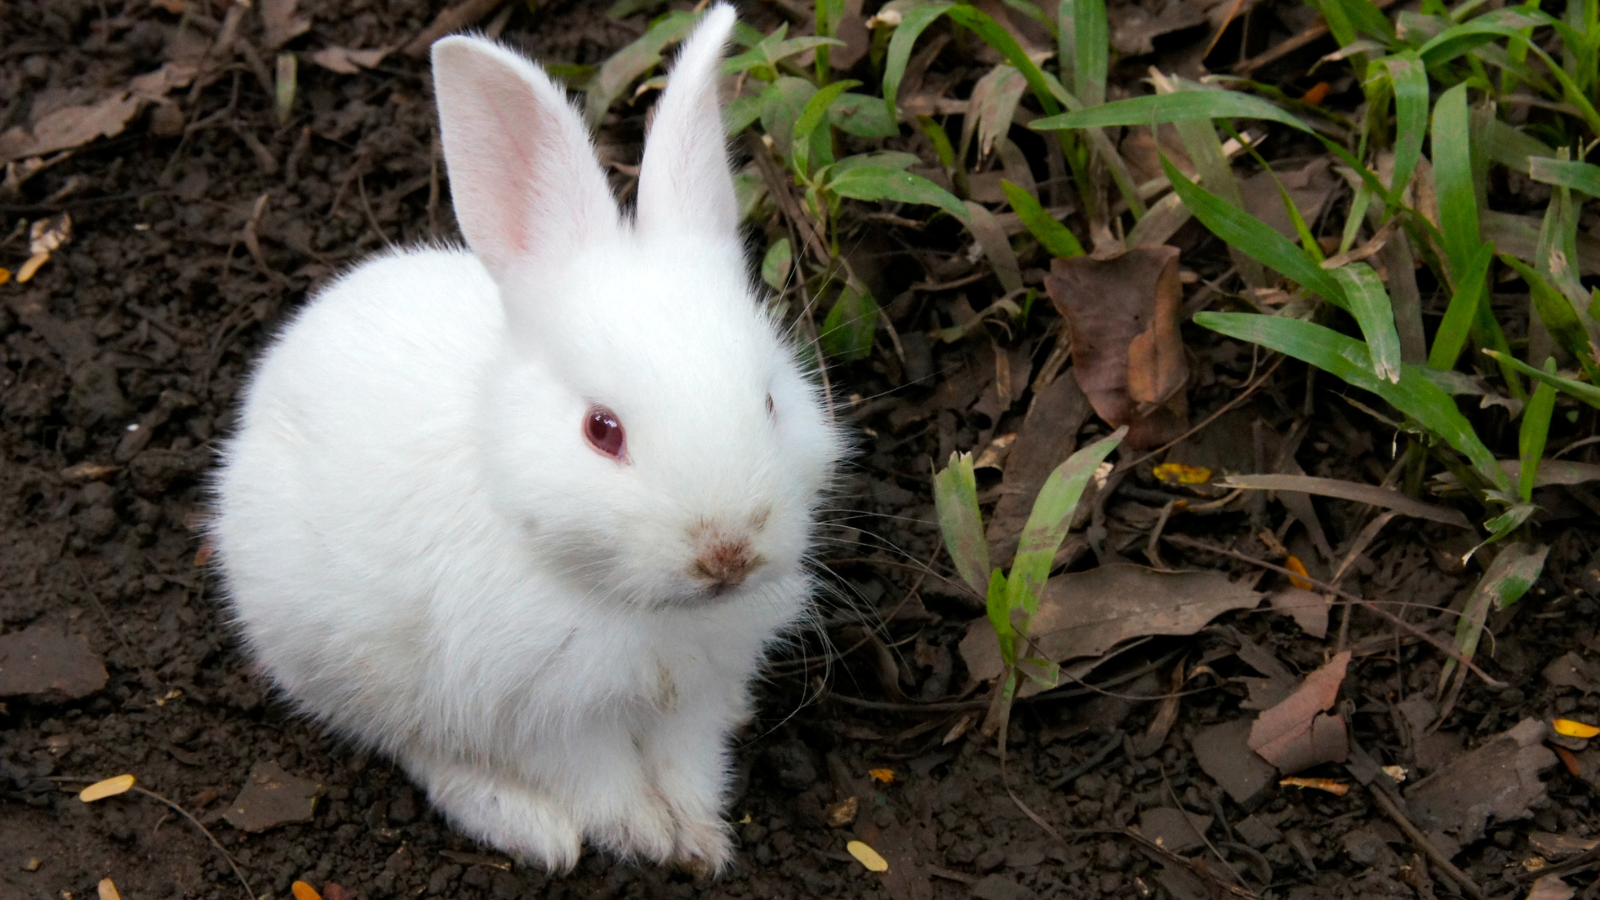 A white rabbit.